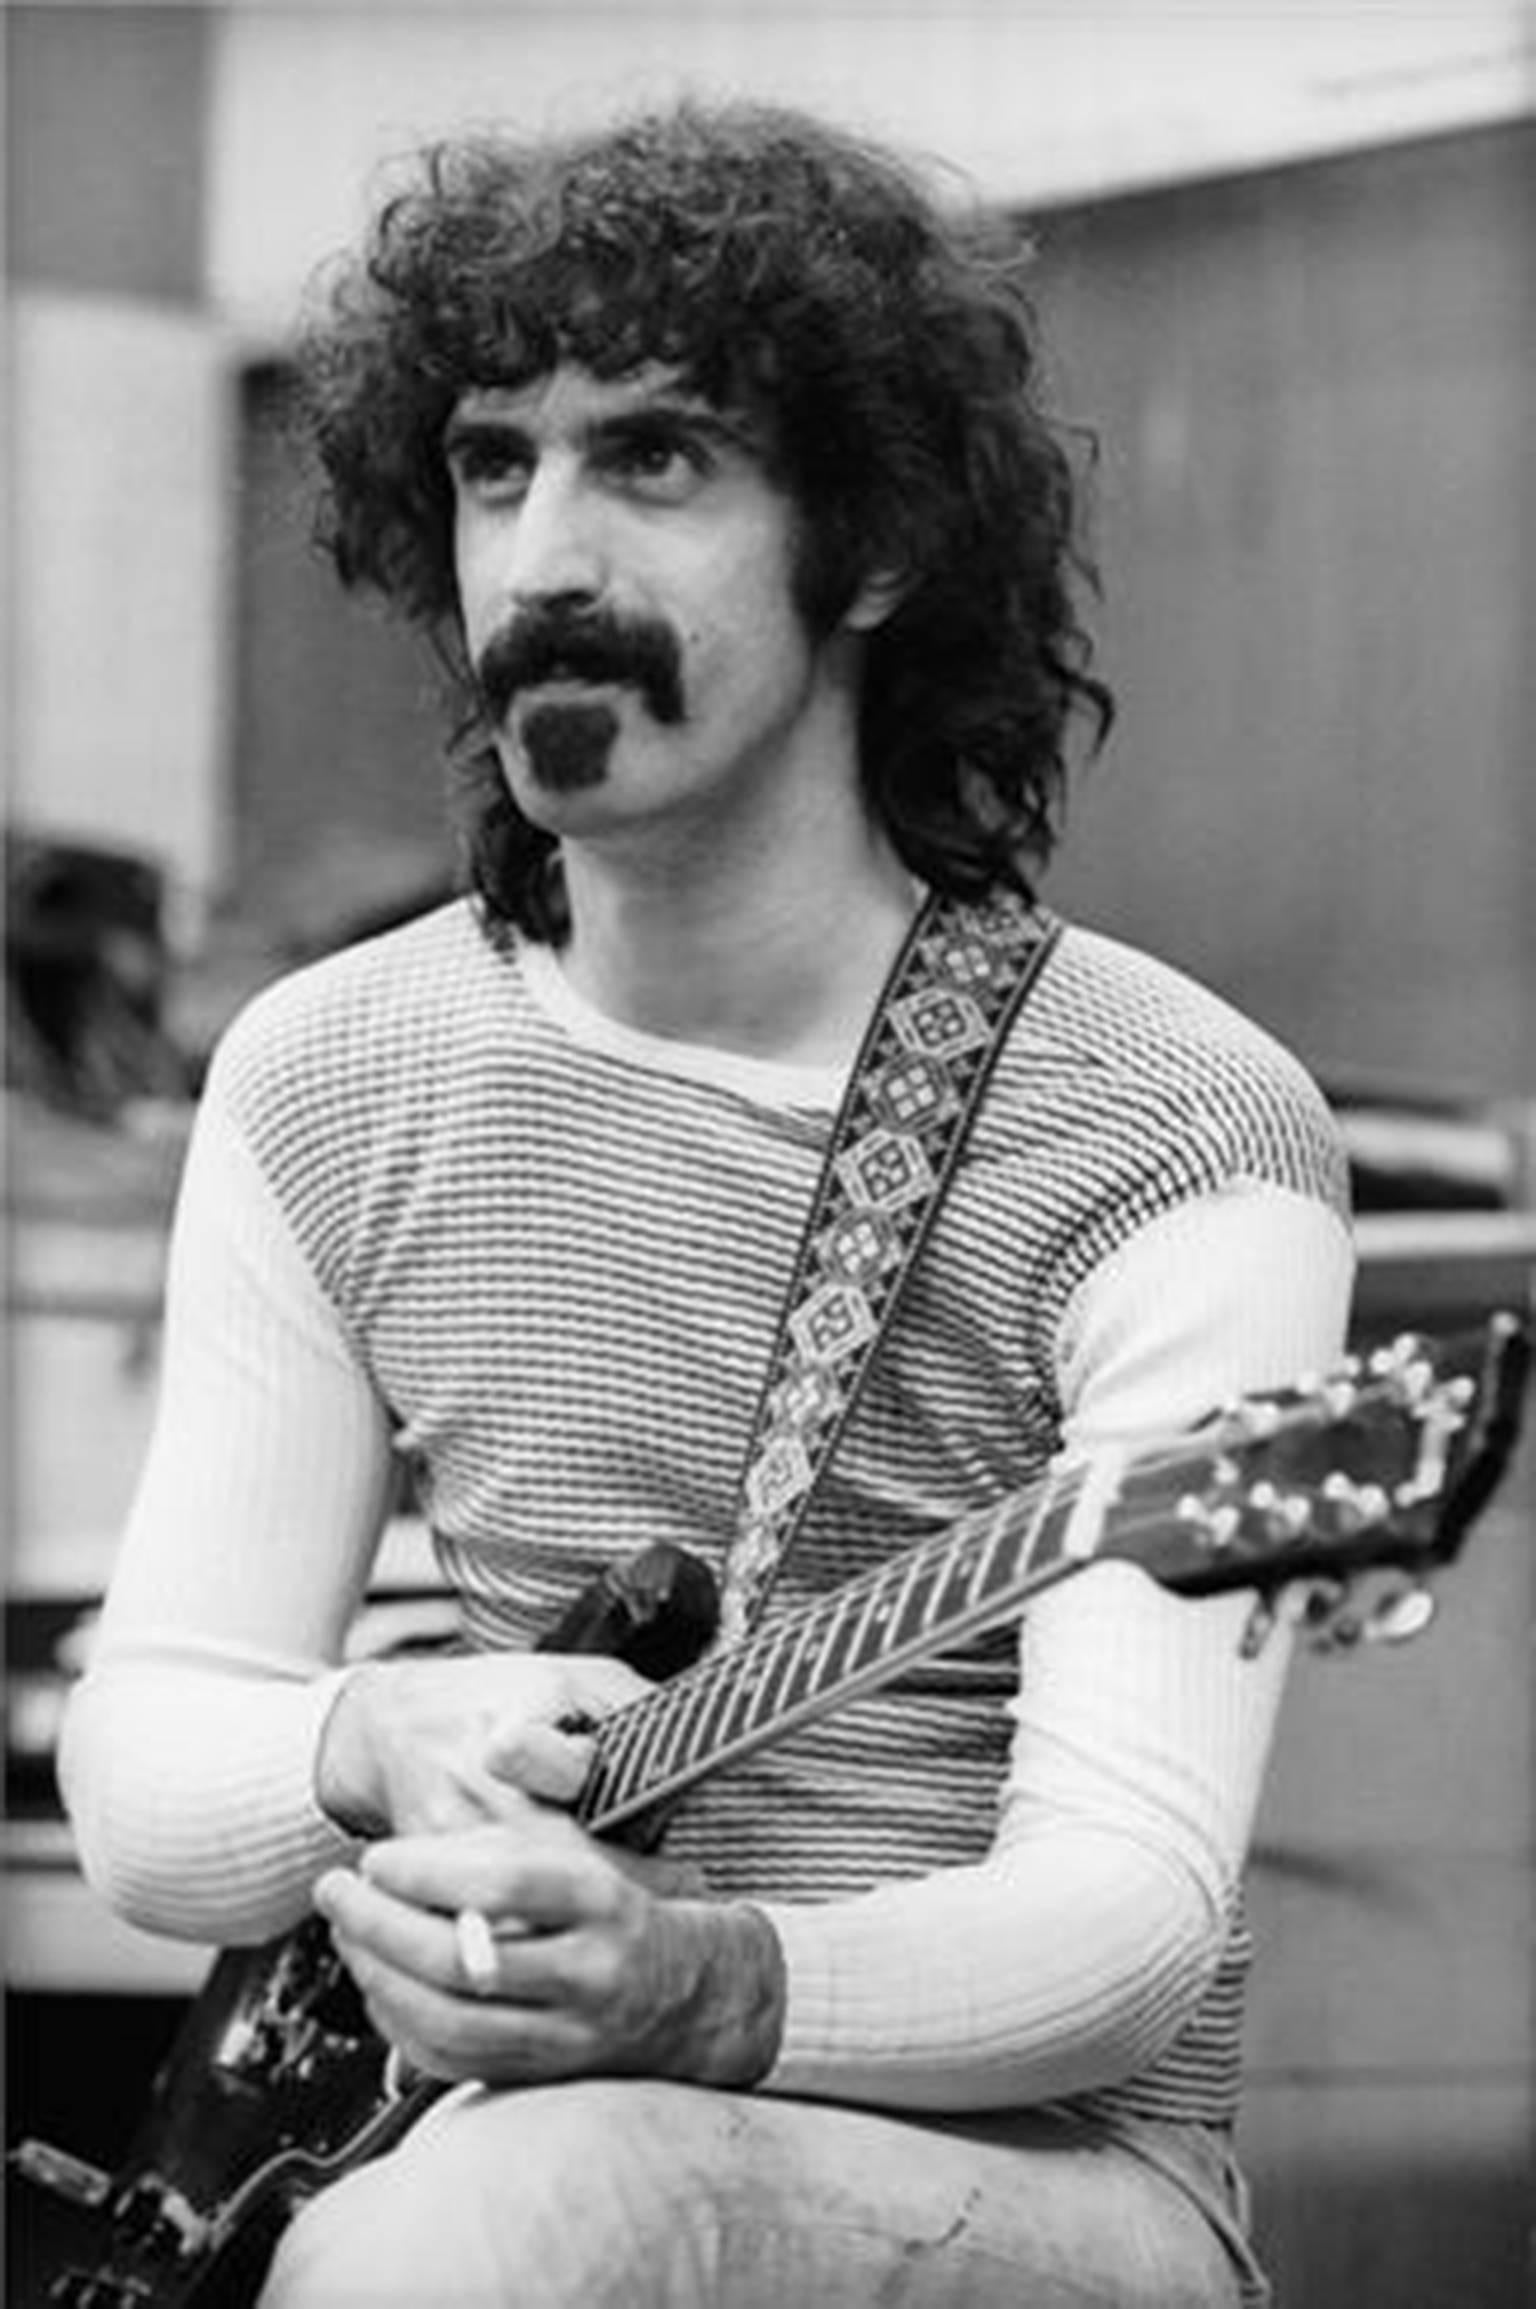 Henry Diltz Portrait Photograph - Frank Zappa Portrait